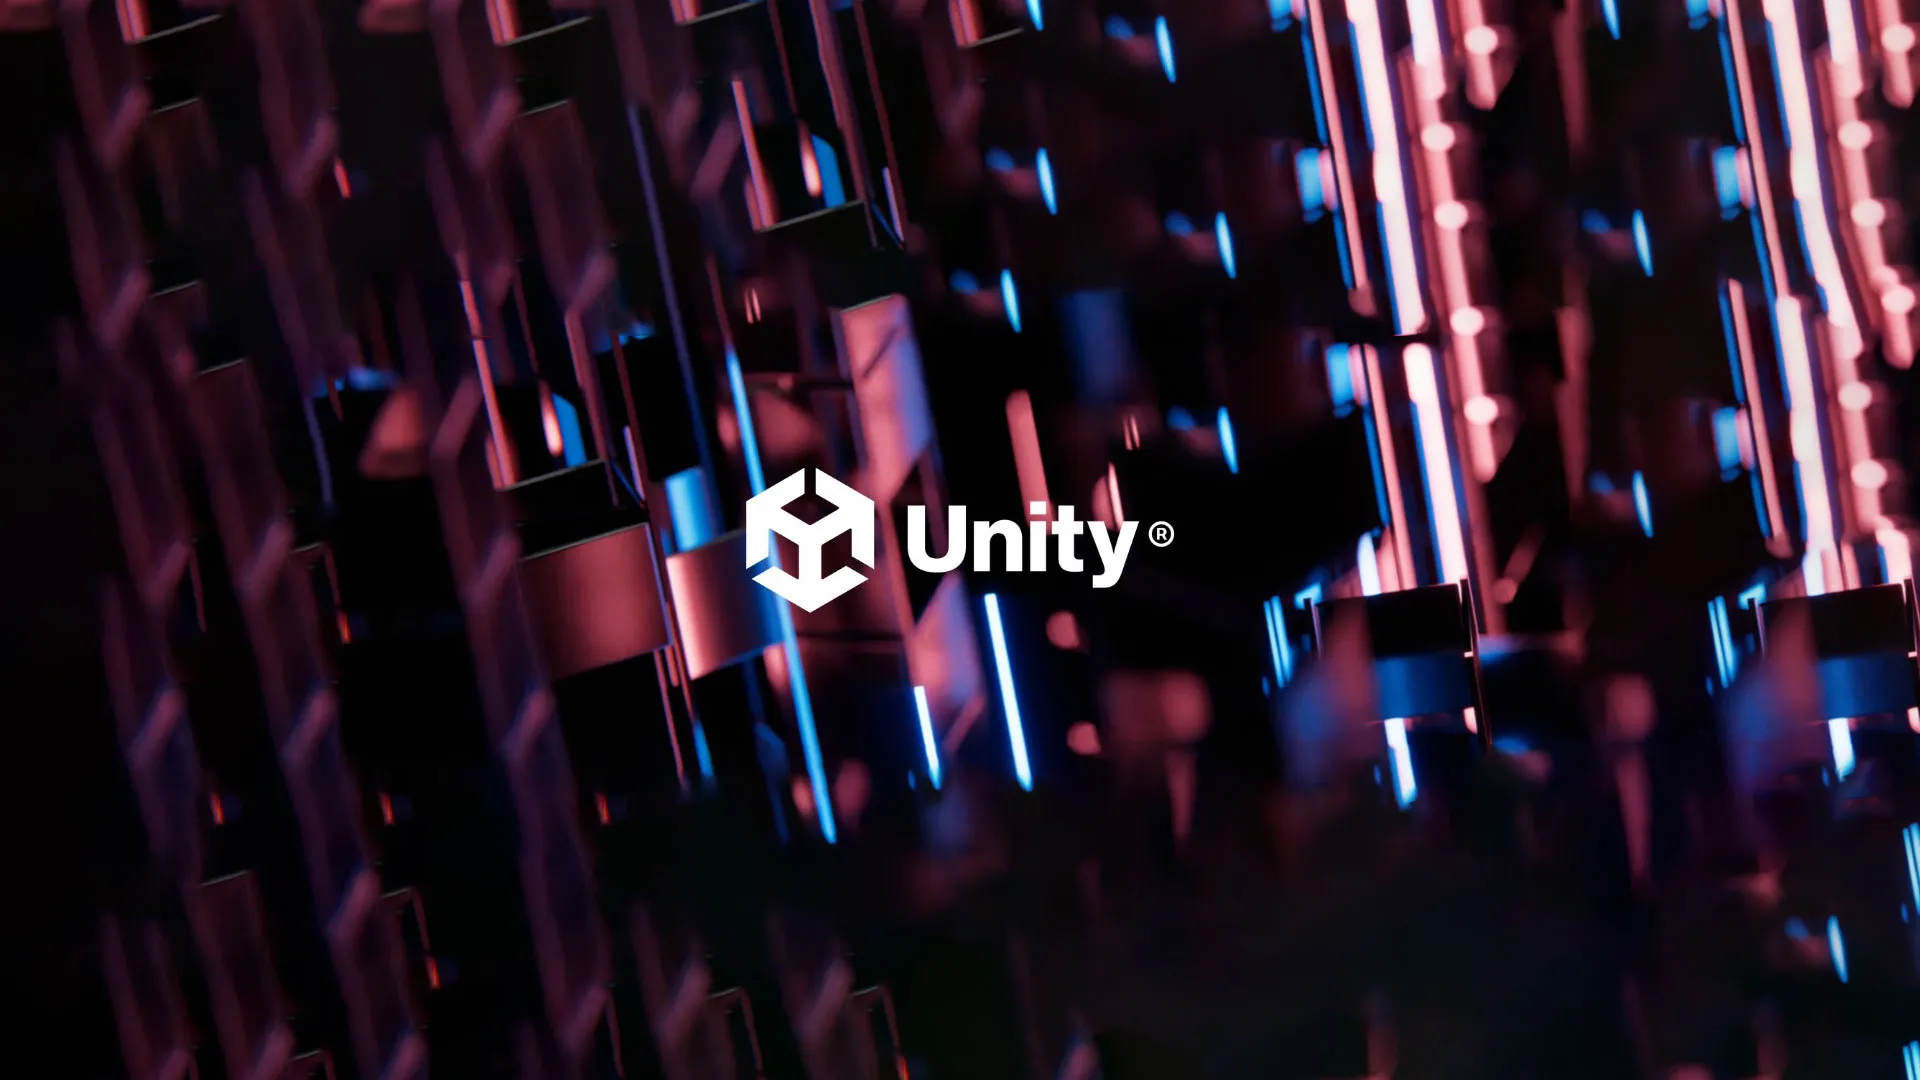 Unity çalışma süresi ücreti nedeniyle eleştiri alıyor